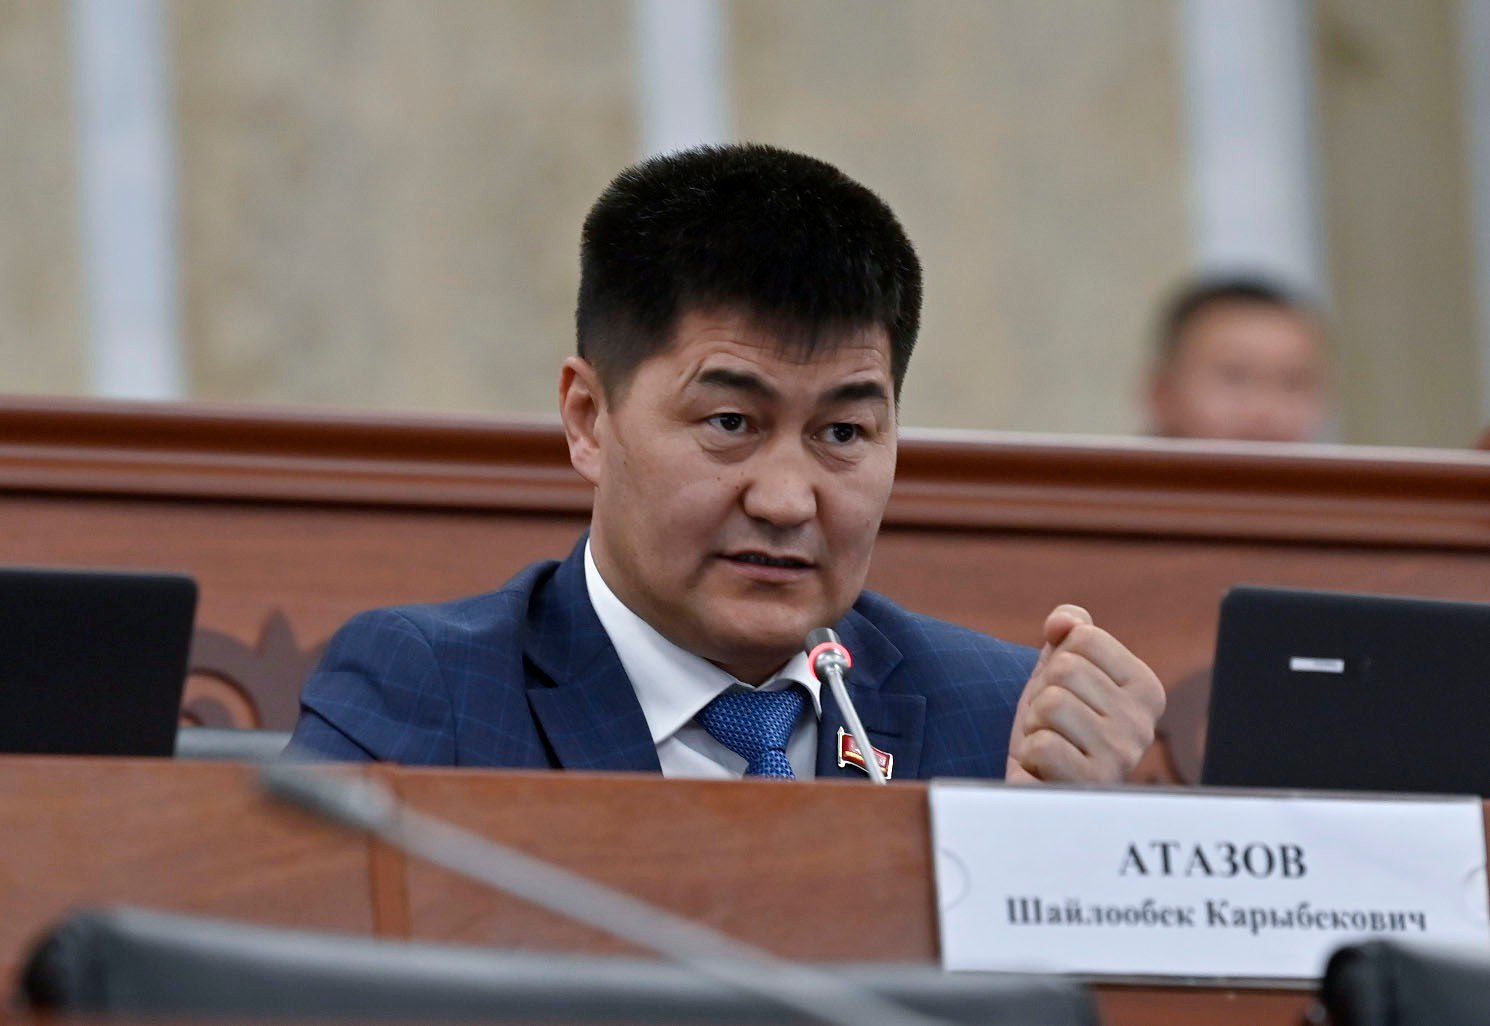 Депутат Атазов снова призвал принять законопроект об иноагентах из-за организаций, негативно влияющих на молодежь